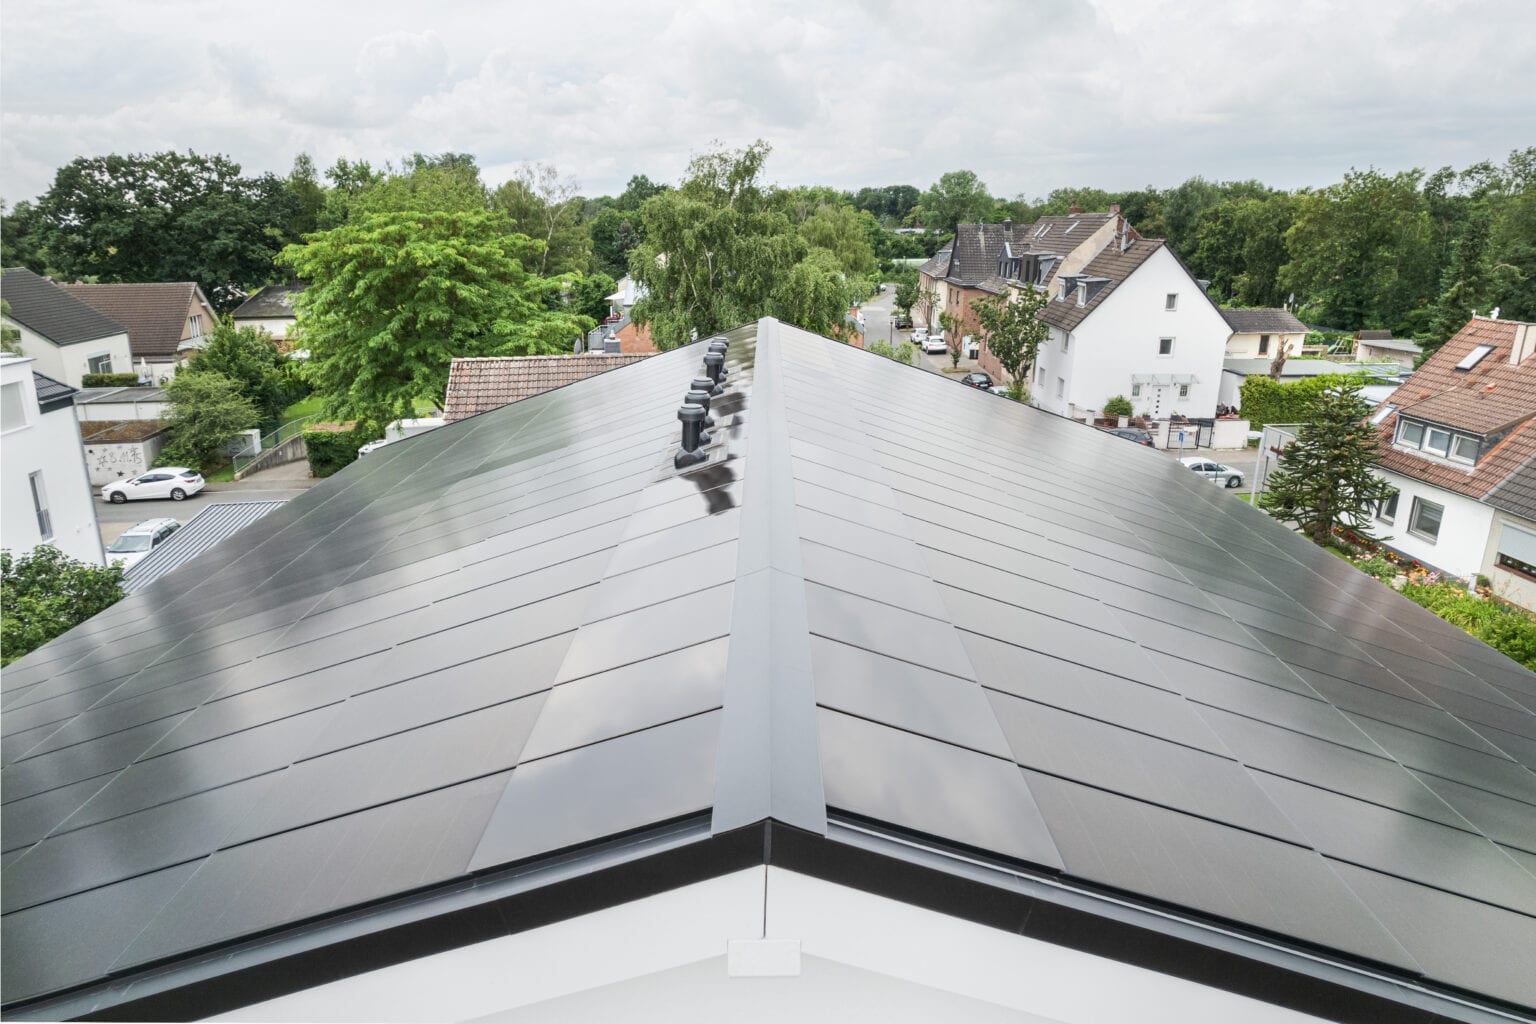 Ennogie-Solardach auf Neubau in Köln: Großaufnahme Dachfläche aus Vogelperspektive, Dachfirst und Abschlüsse zu erkennen